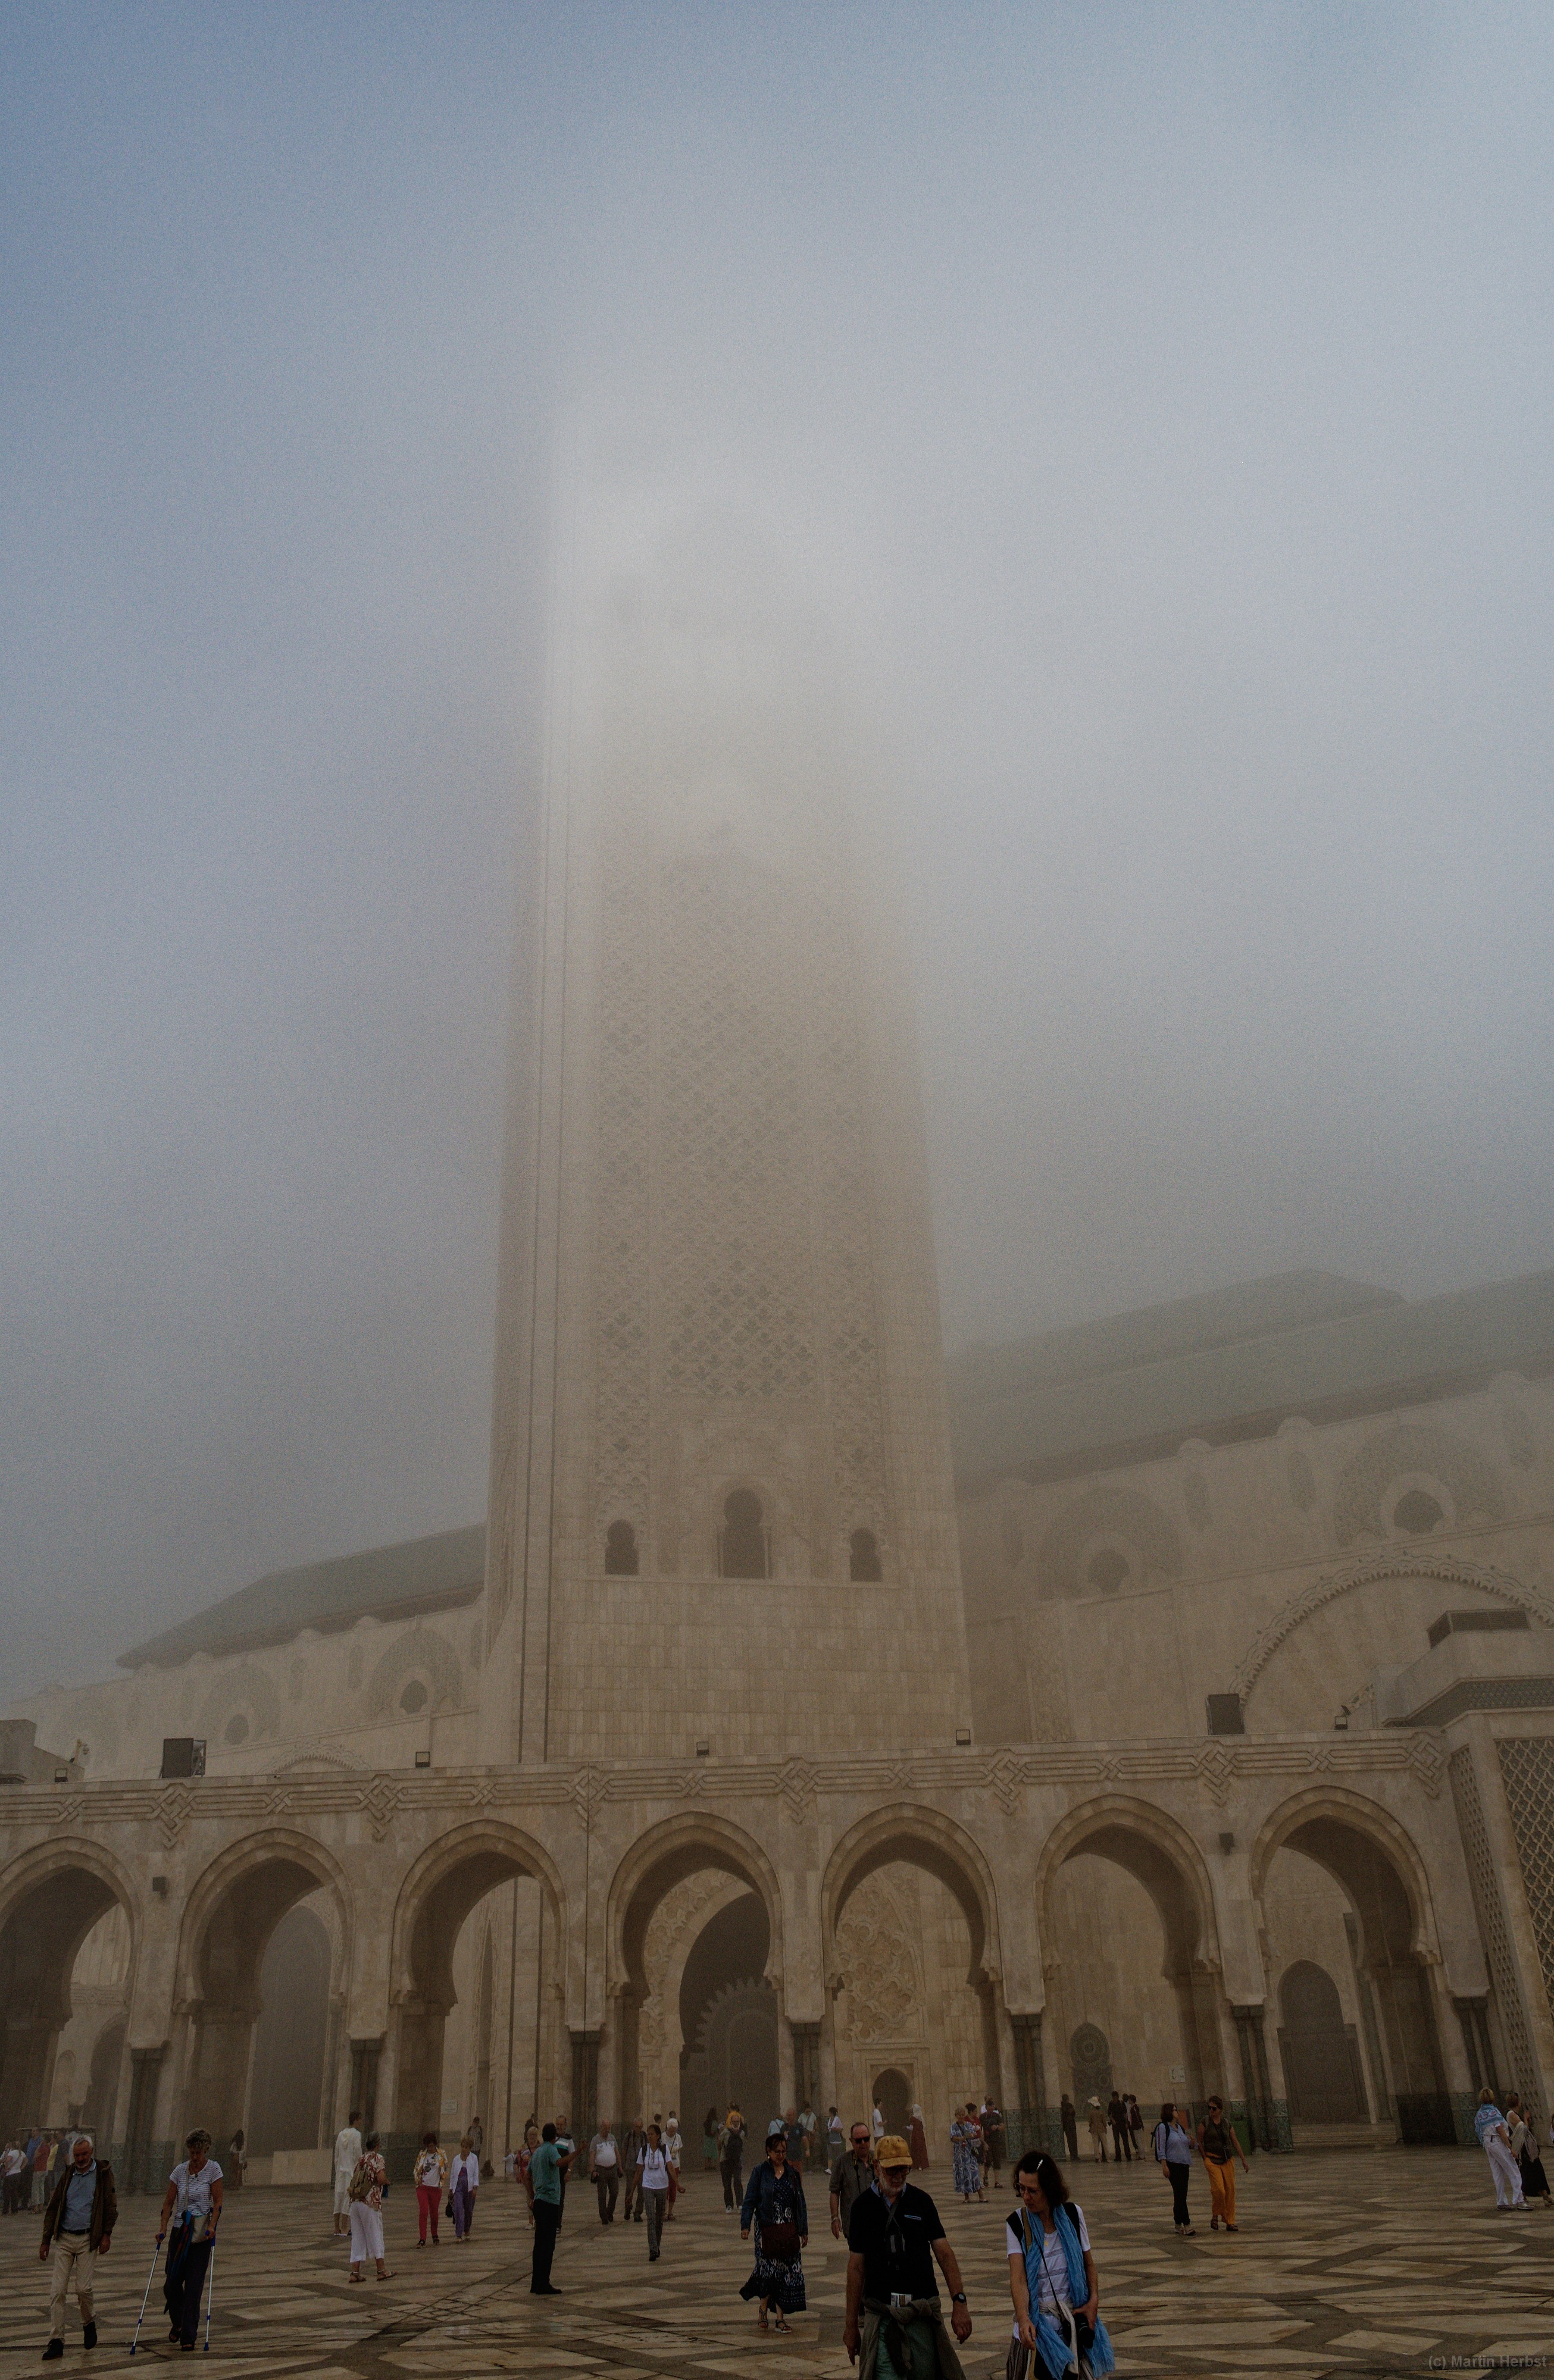 Casablanca - Moschee Hassan II Es war so neblig, dass man die Spitze des Minaretts nicht sehen konnte